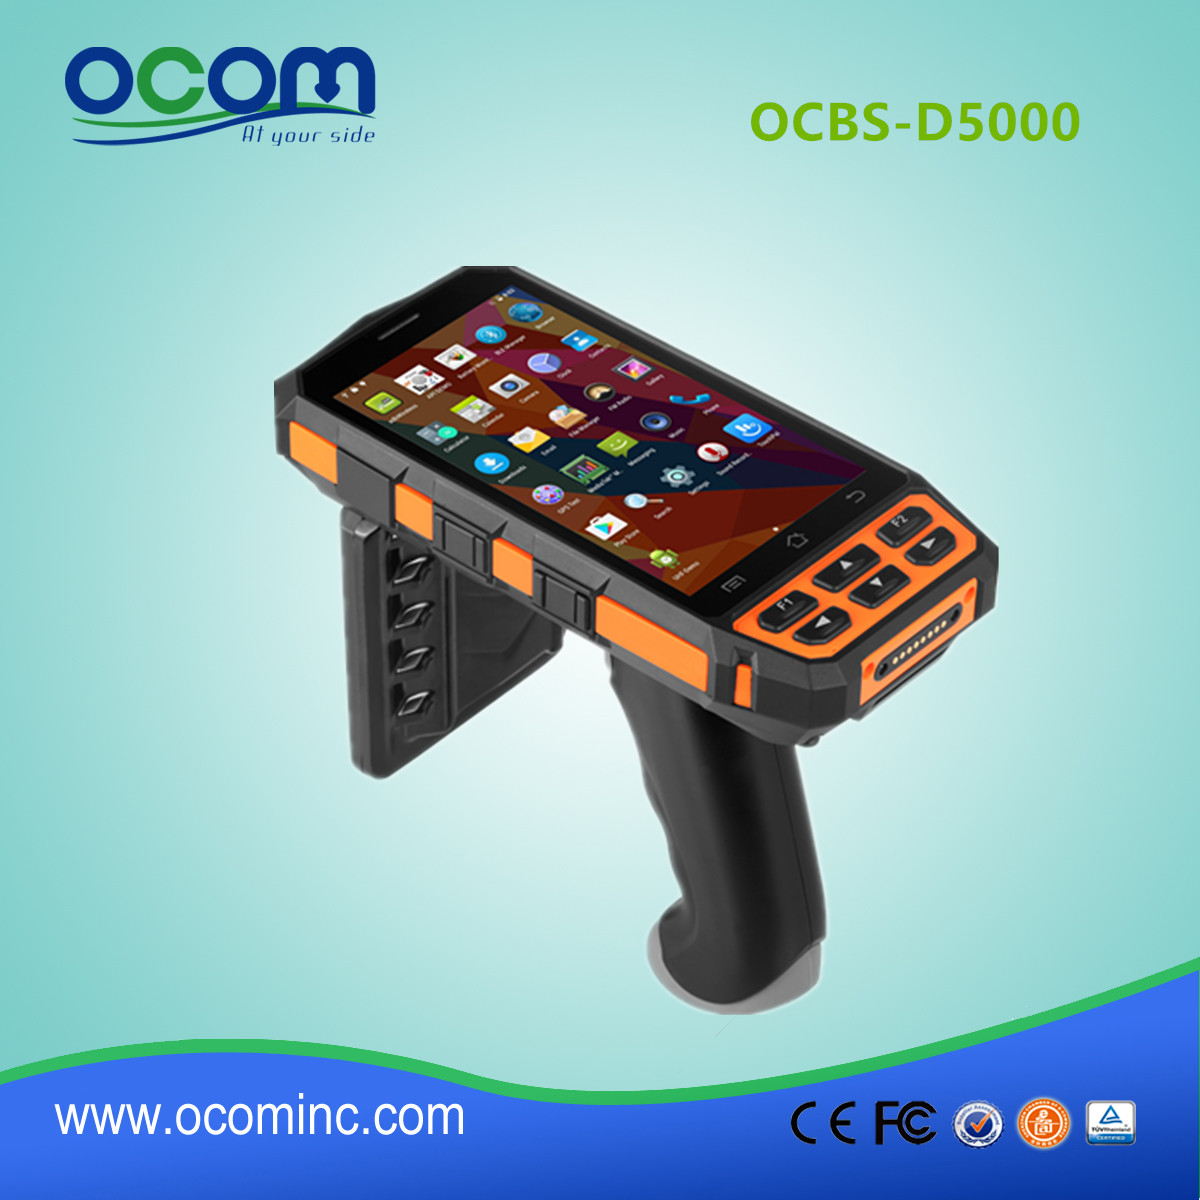 OCBS-D5000 εστιατόριο χειρός ανθεκτικό ανδροειδές OS βιομηχανικό PDA αναγνώστη RFID